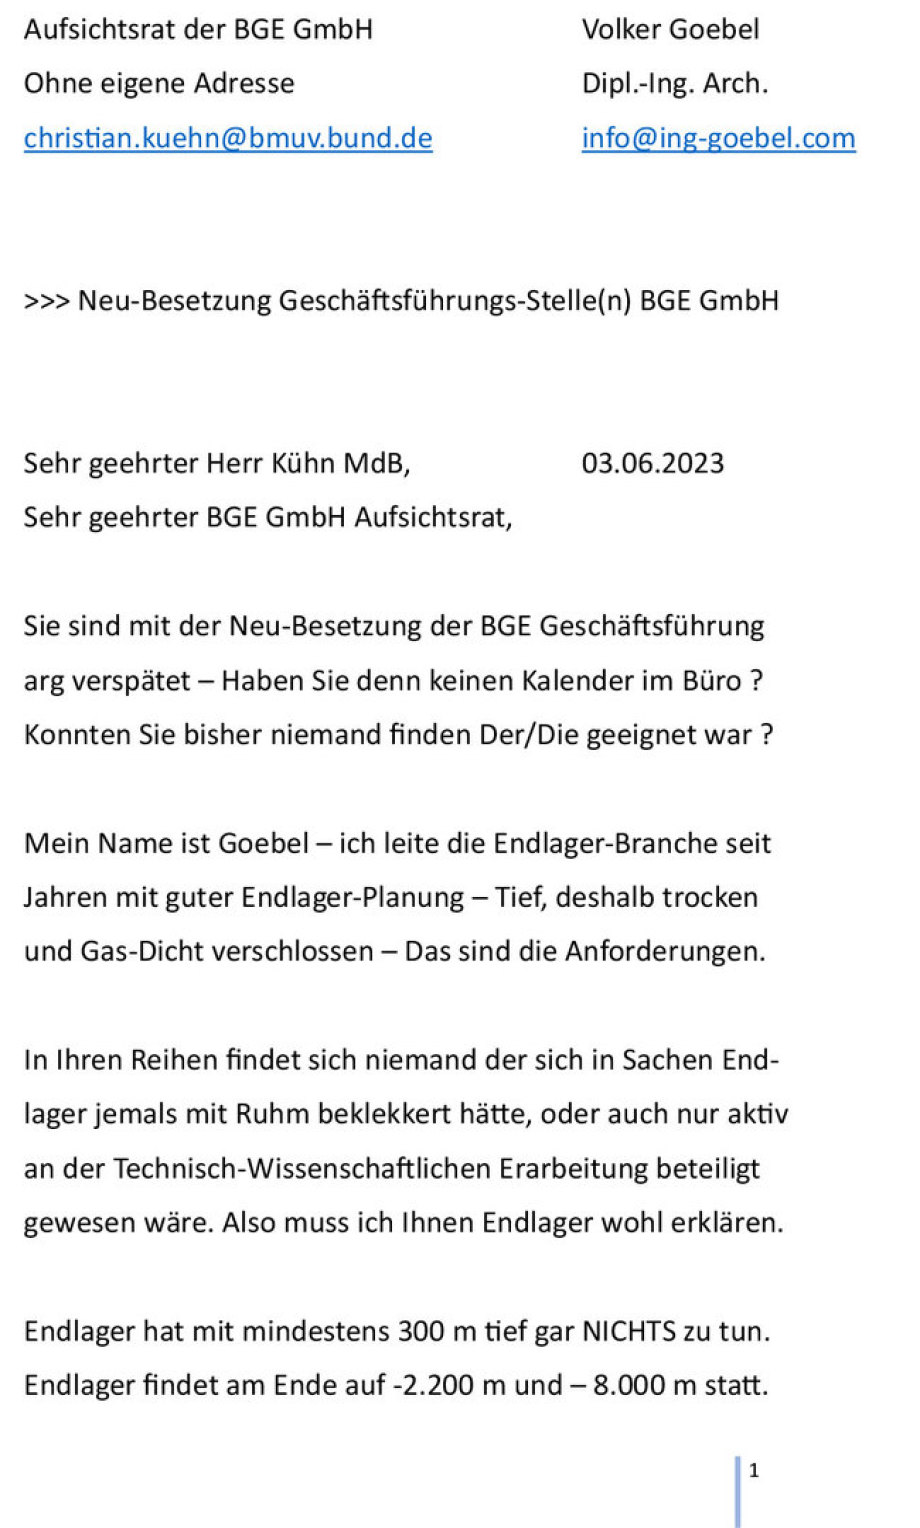 1von5 Entscheidender Brief an den BGE GmbH Aufsichtsrat - Verfasser ist der GF Stellen-Bewerber Volker Goebel Dipl.- Ing.